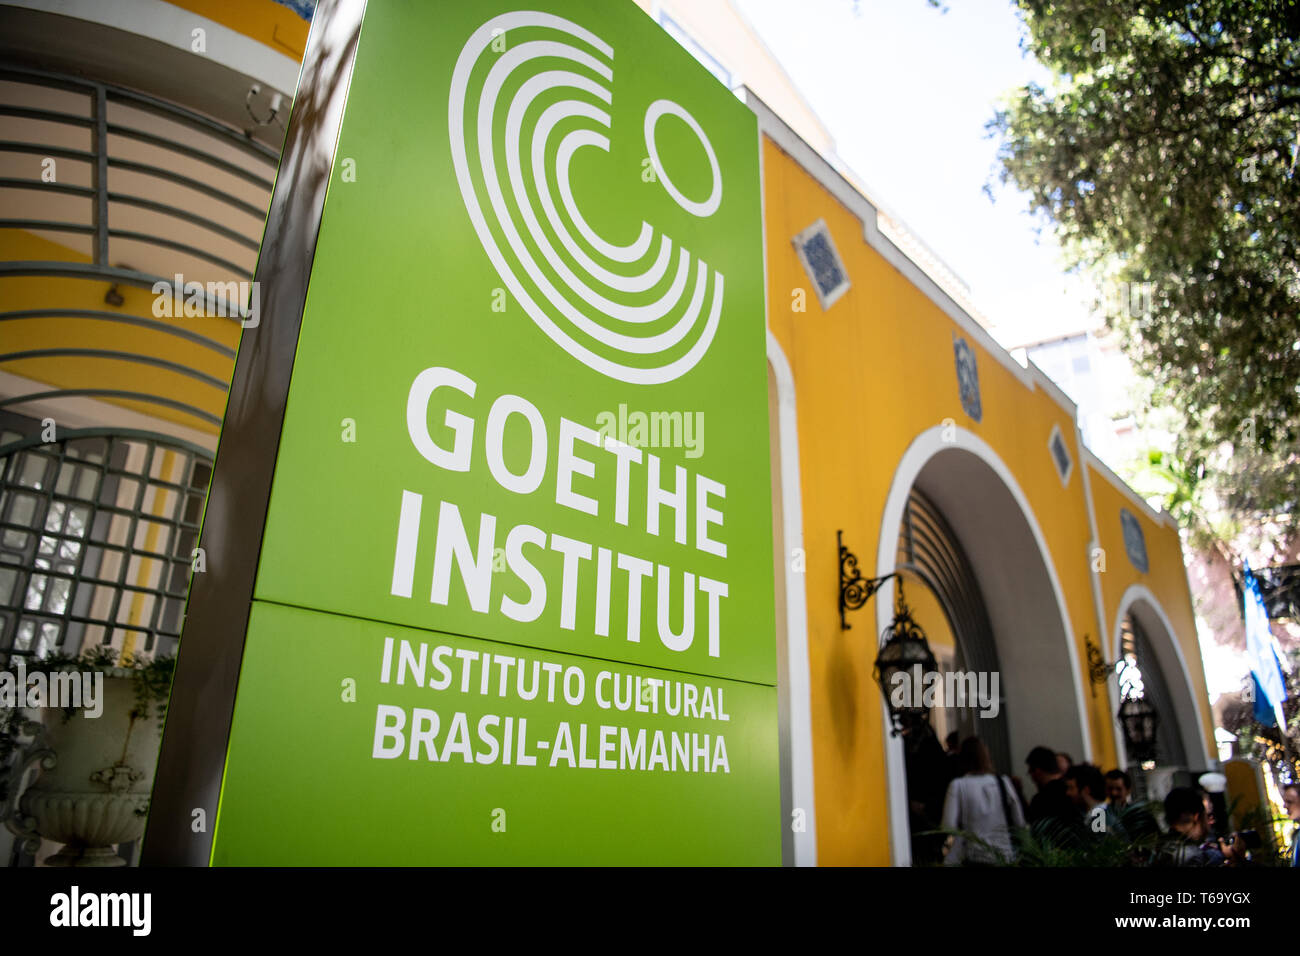 Salvador Da Bahia Brazil 29th Apr 2019 The Logo Of The Goethe Institut Salvador Bahia The